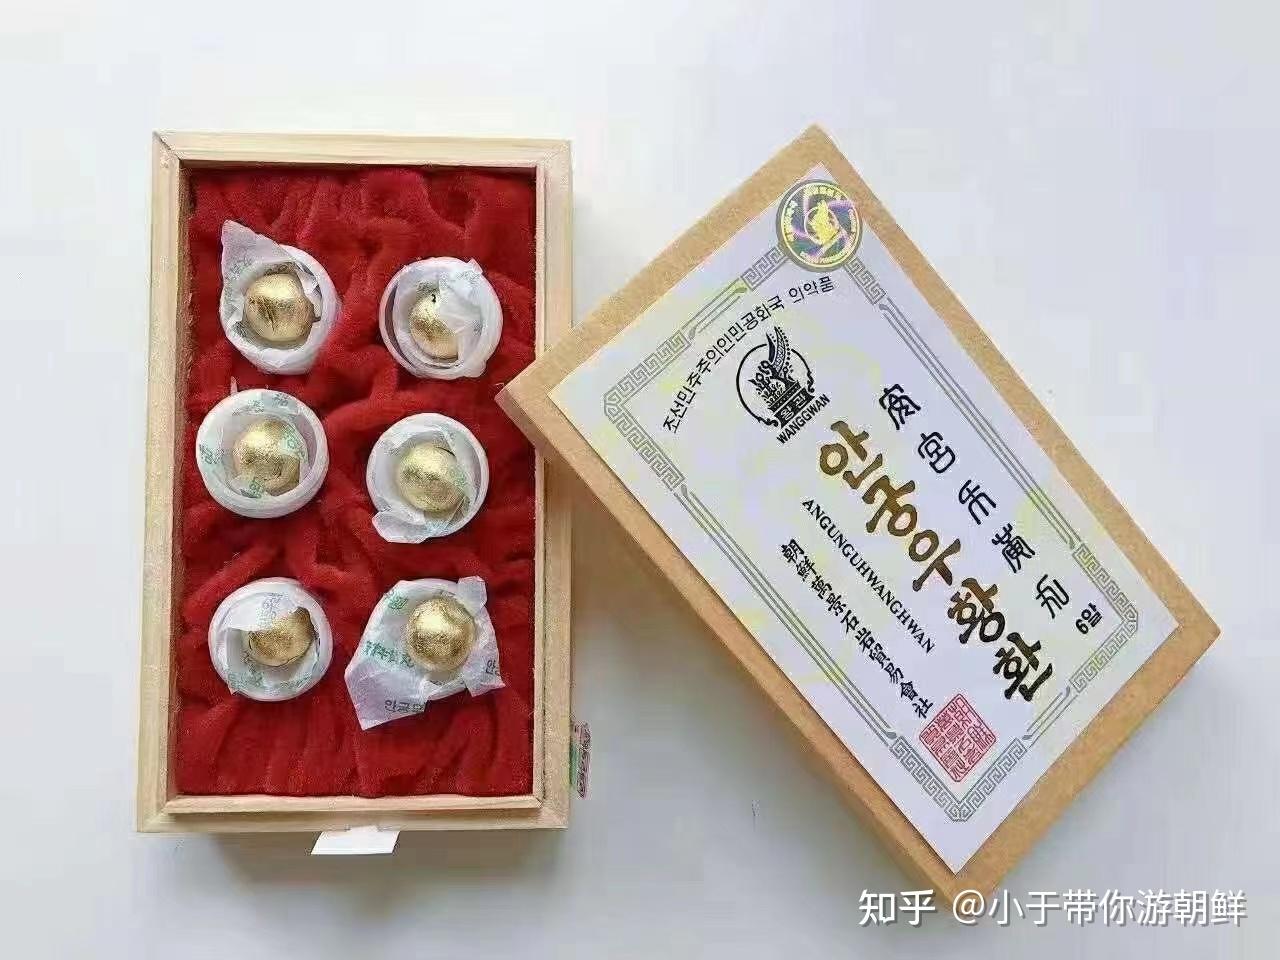 朝鲜石盒安宫牛黄丸图片